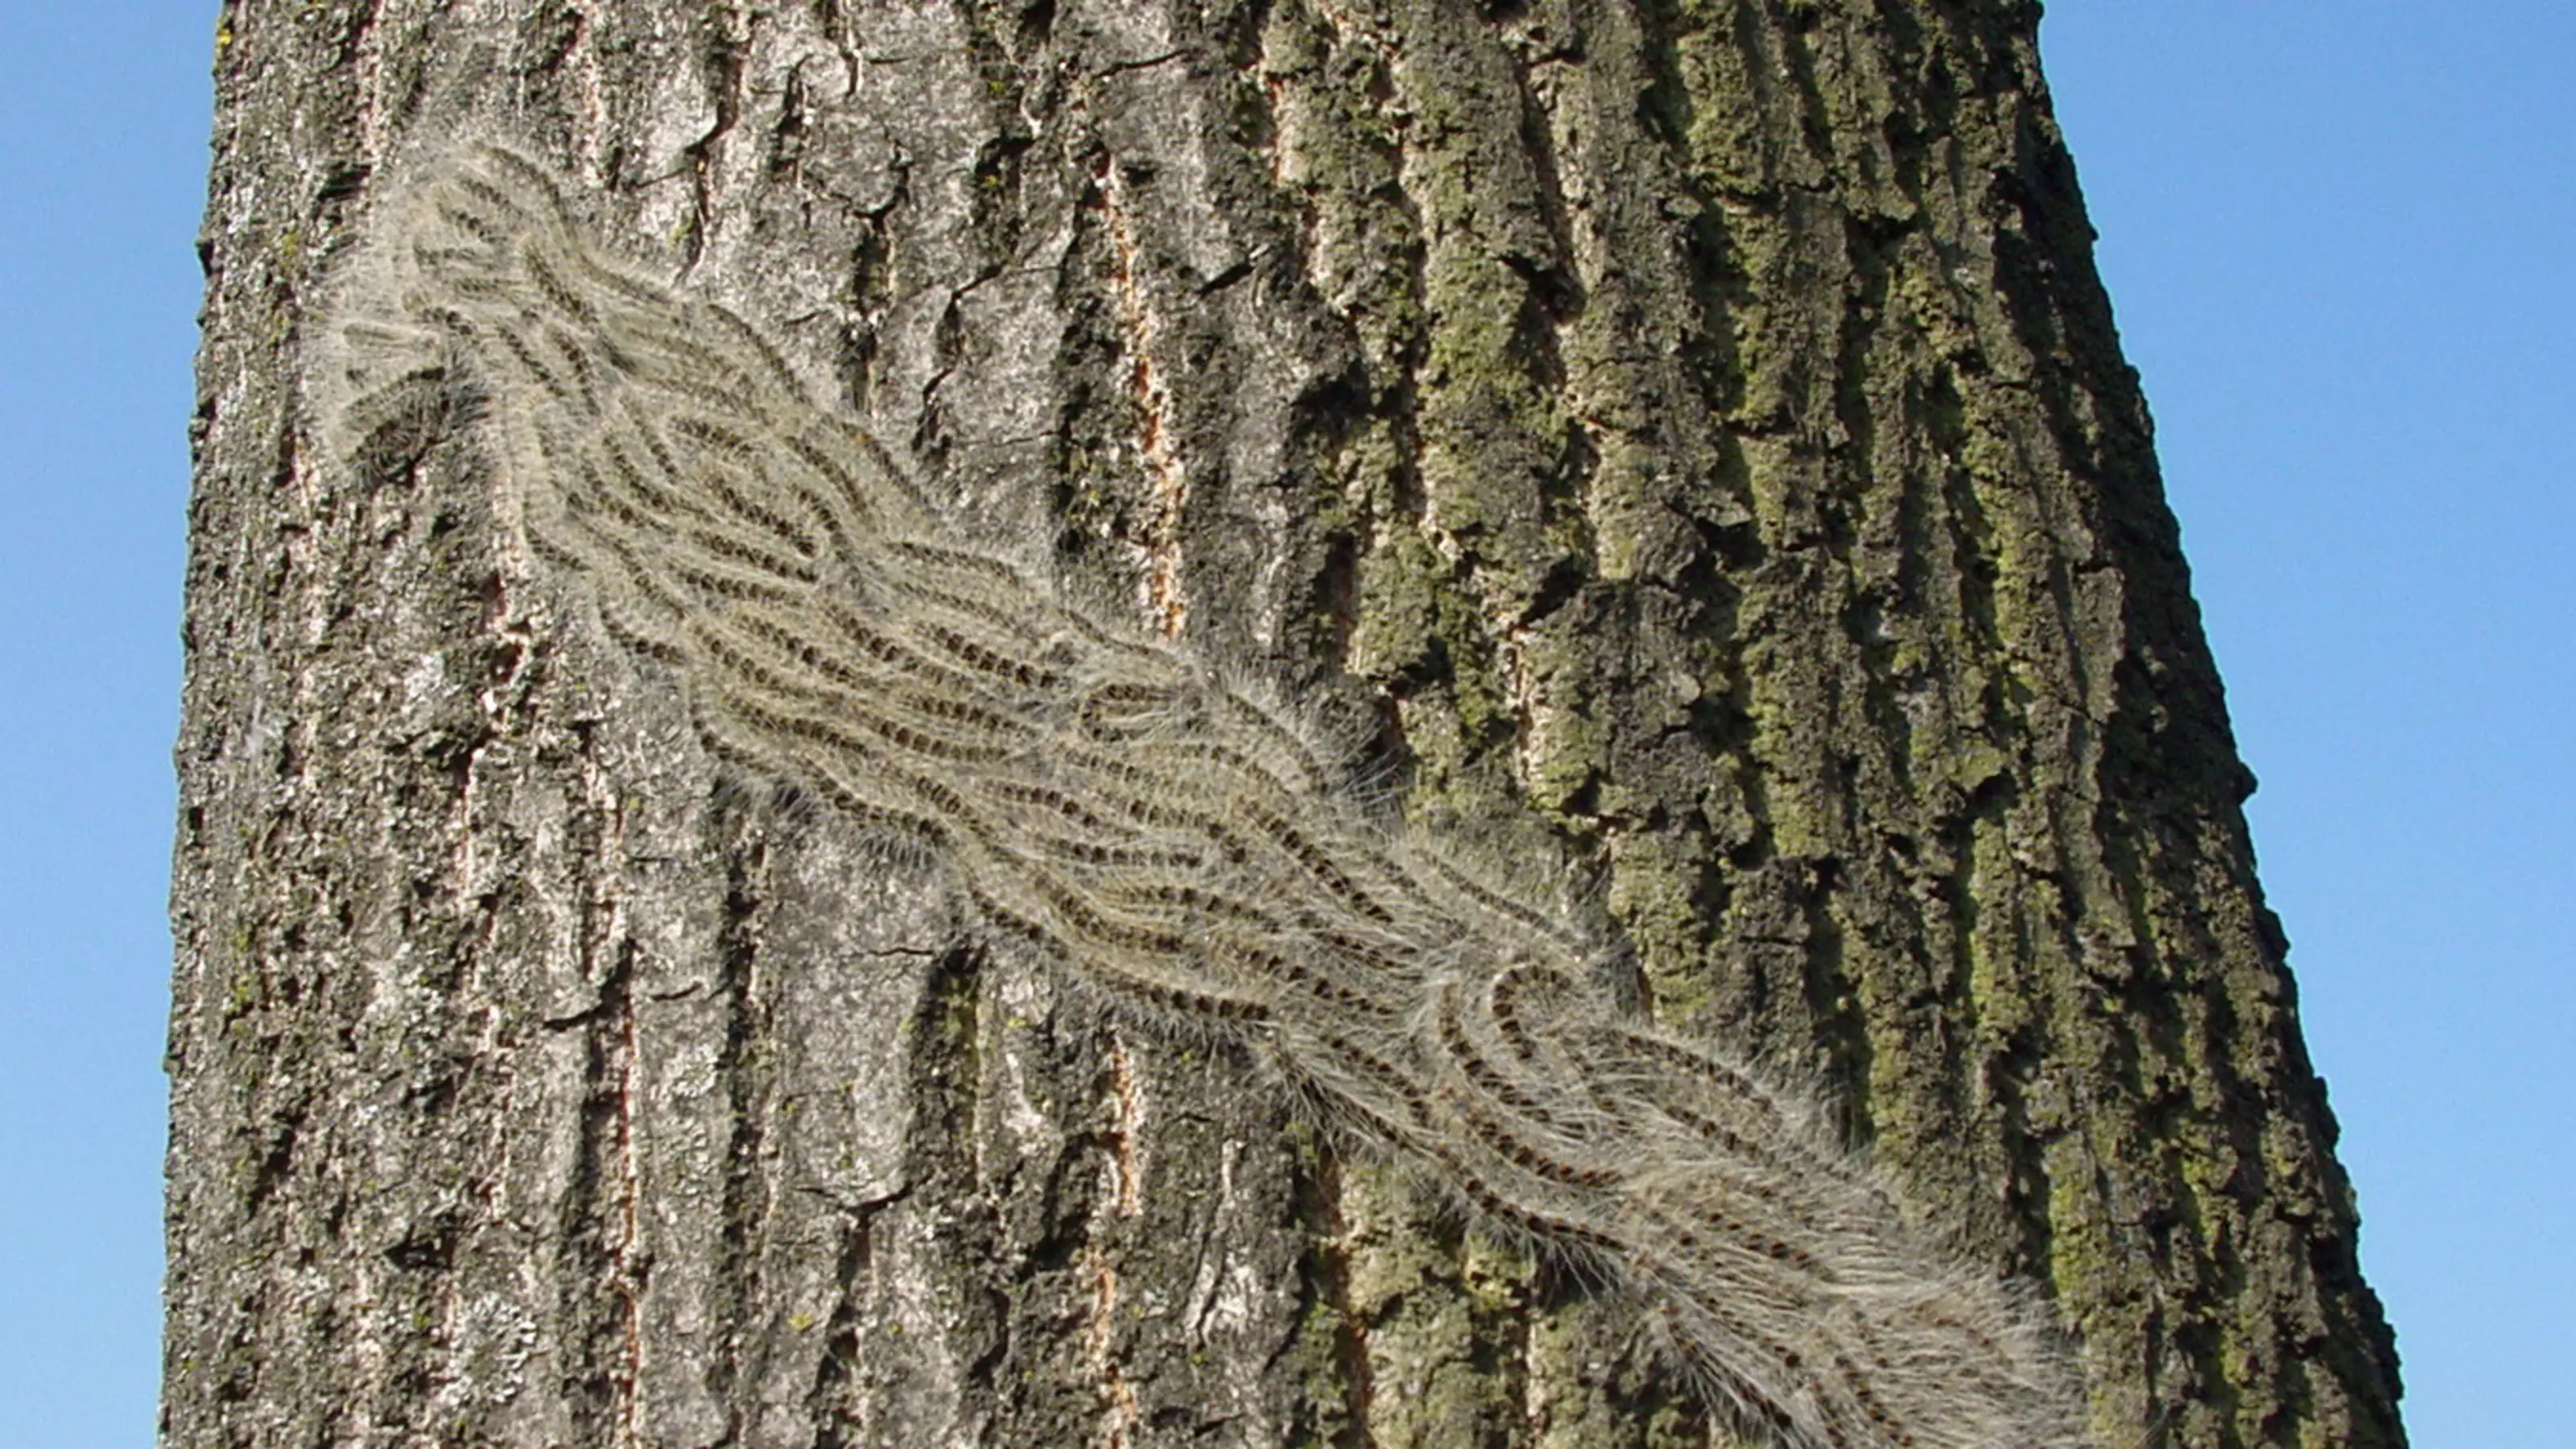 OPM caterpillar's on a oak tree